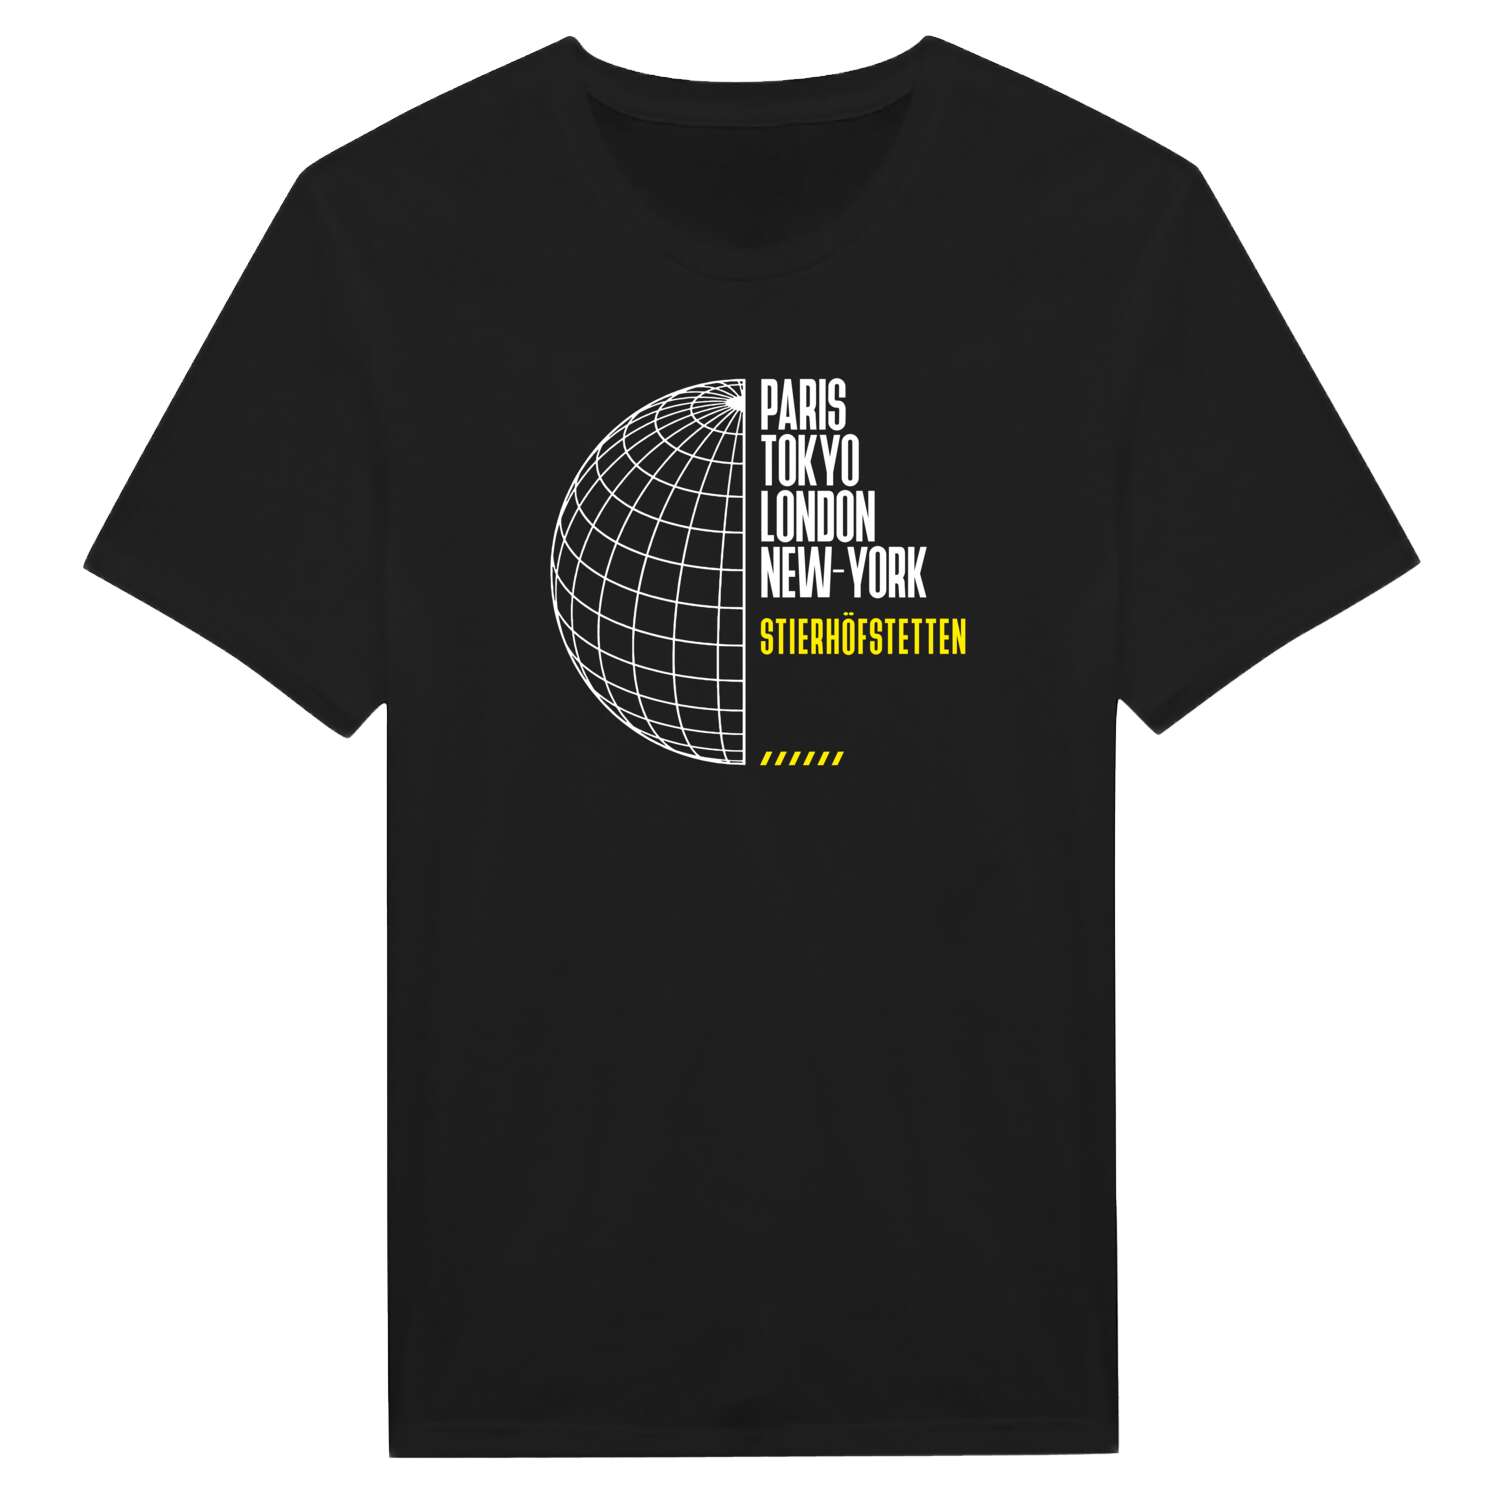 Stierhöfstetten T-Shirt »Paris Tokyo London«